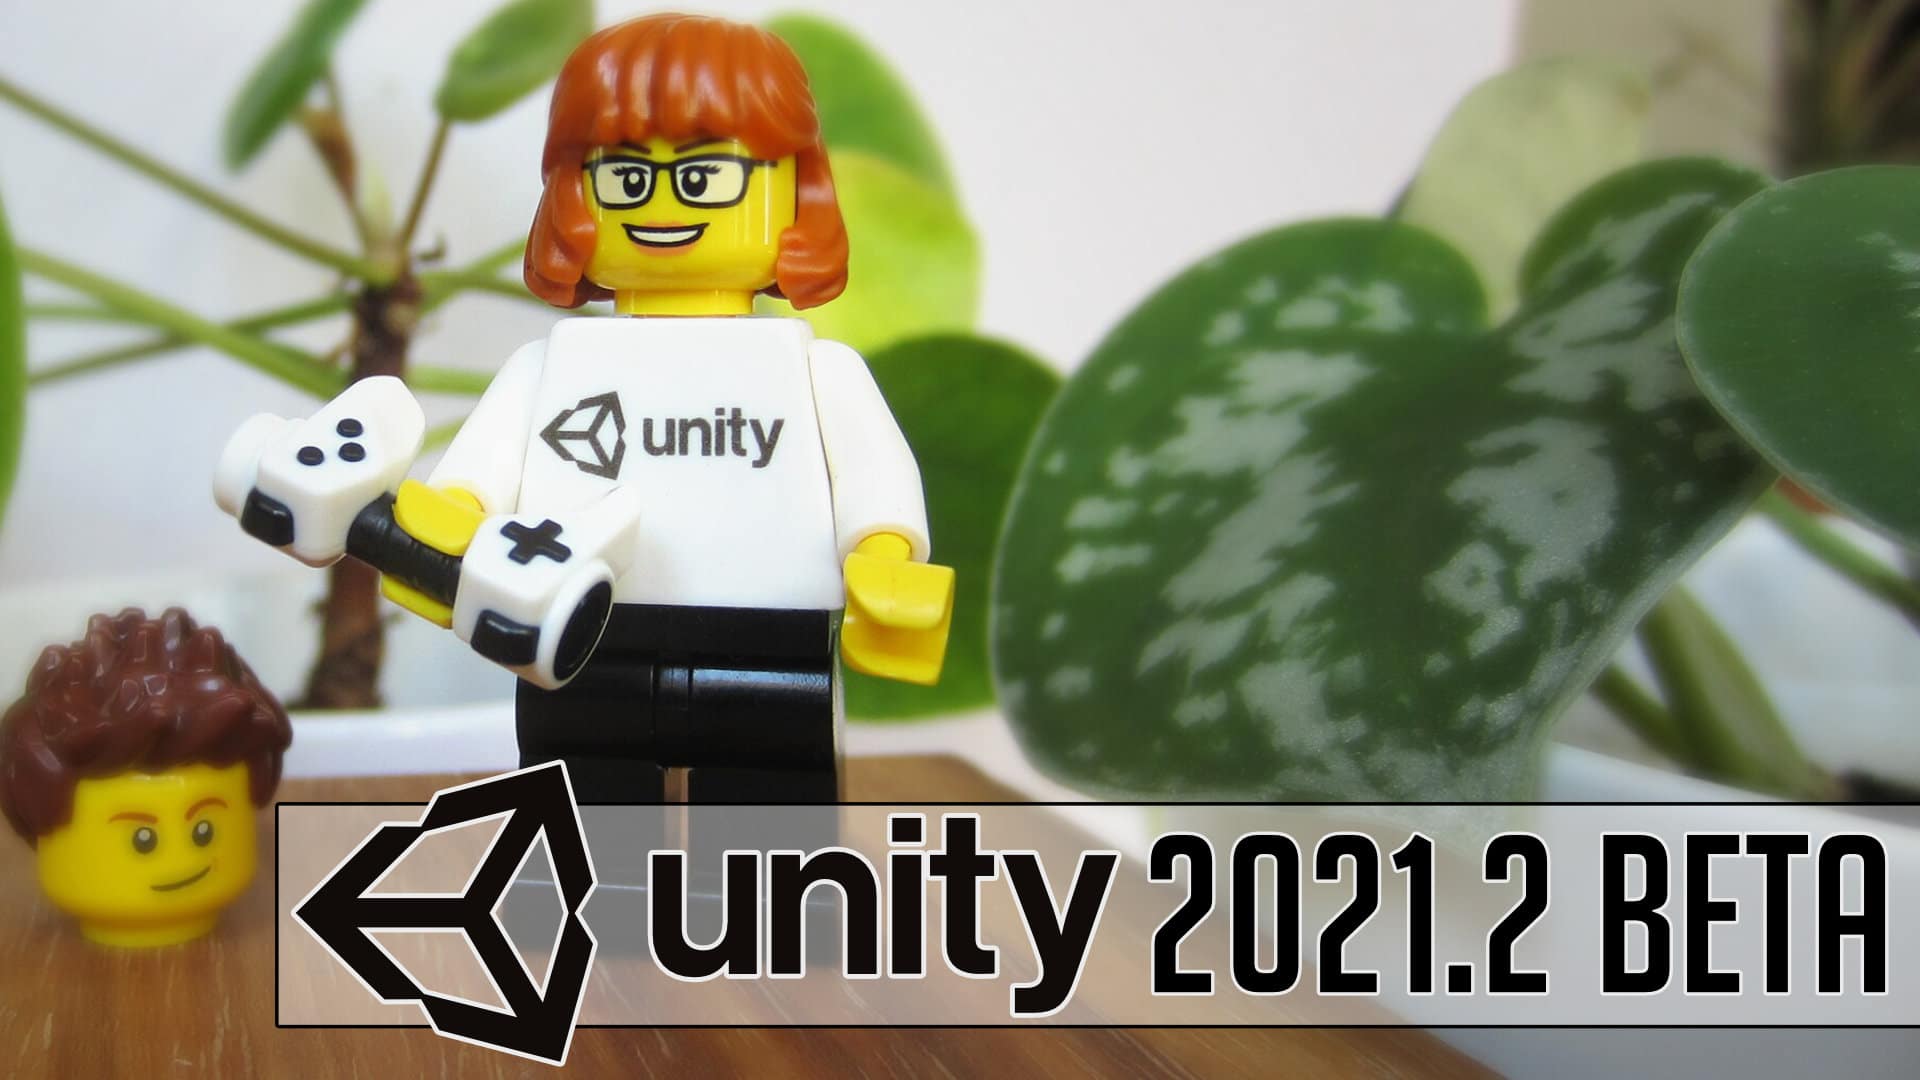 Unity 2021.2 Beta Released